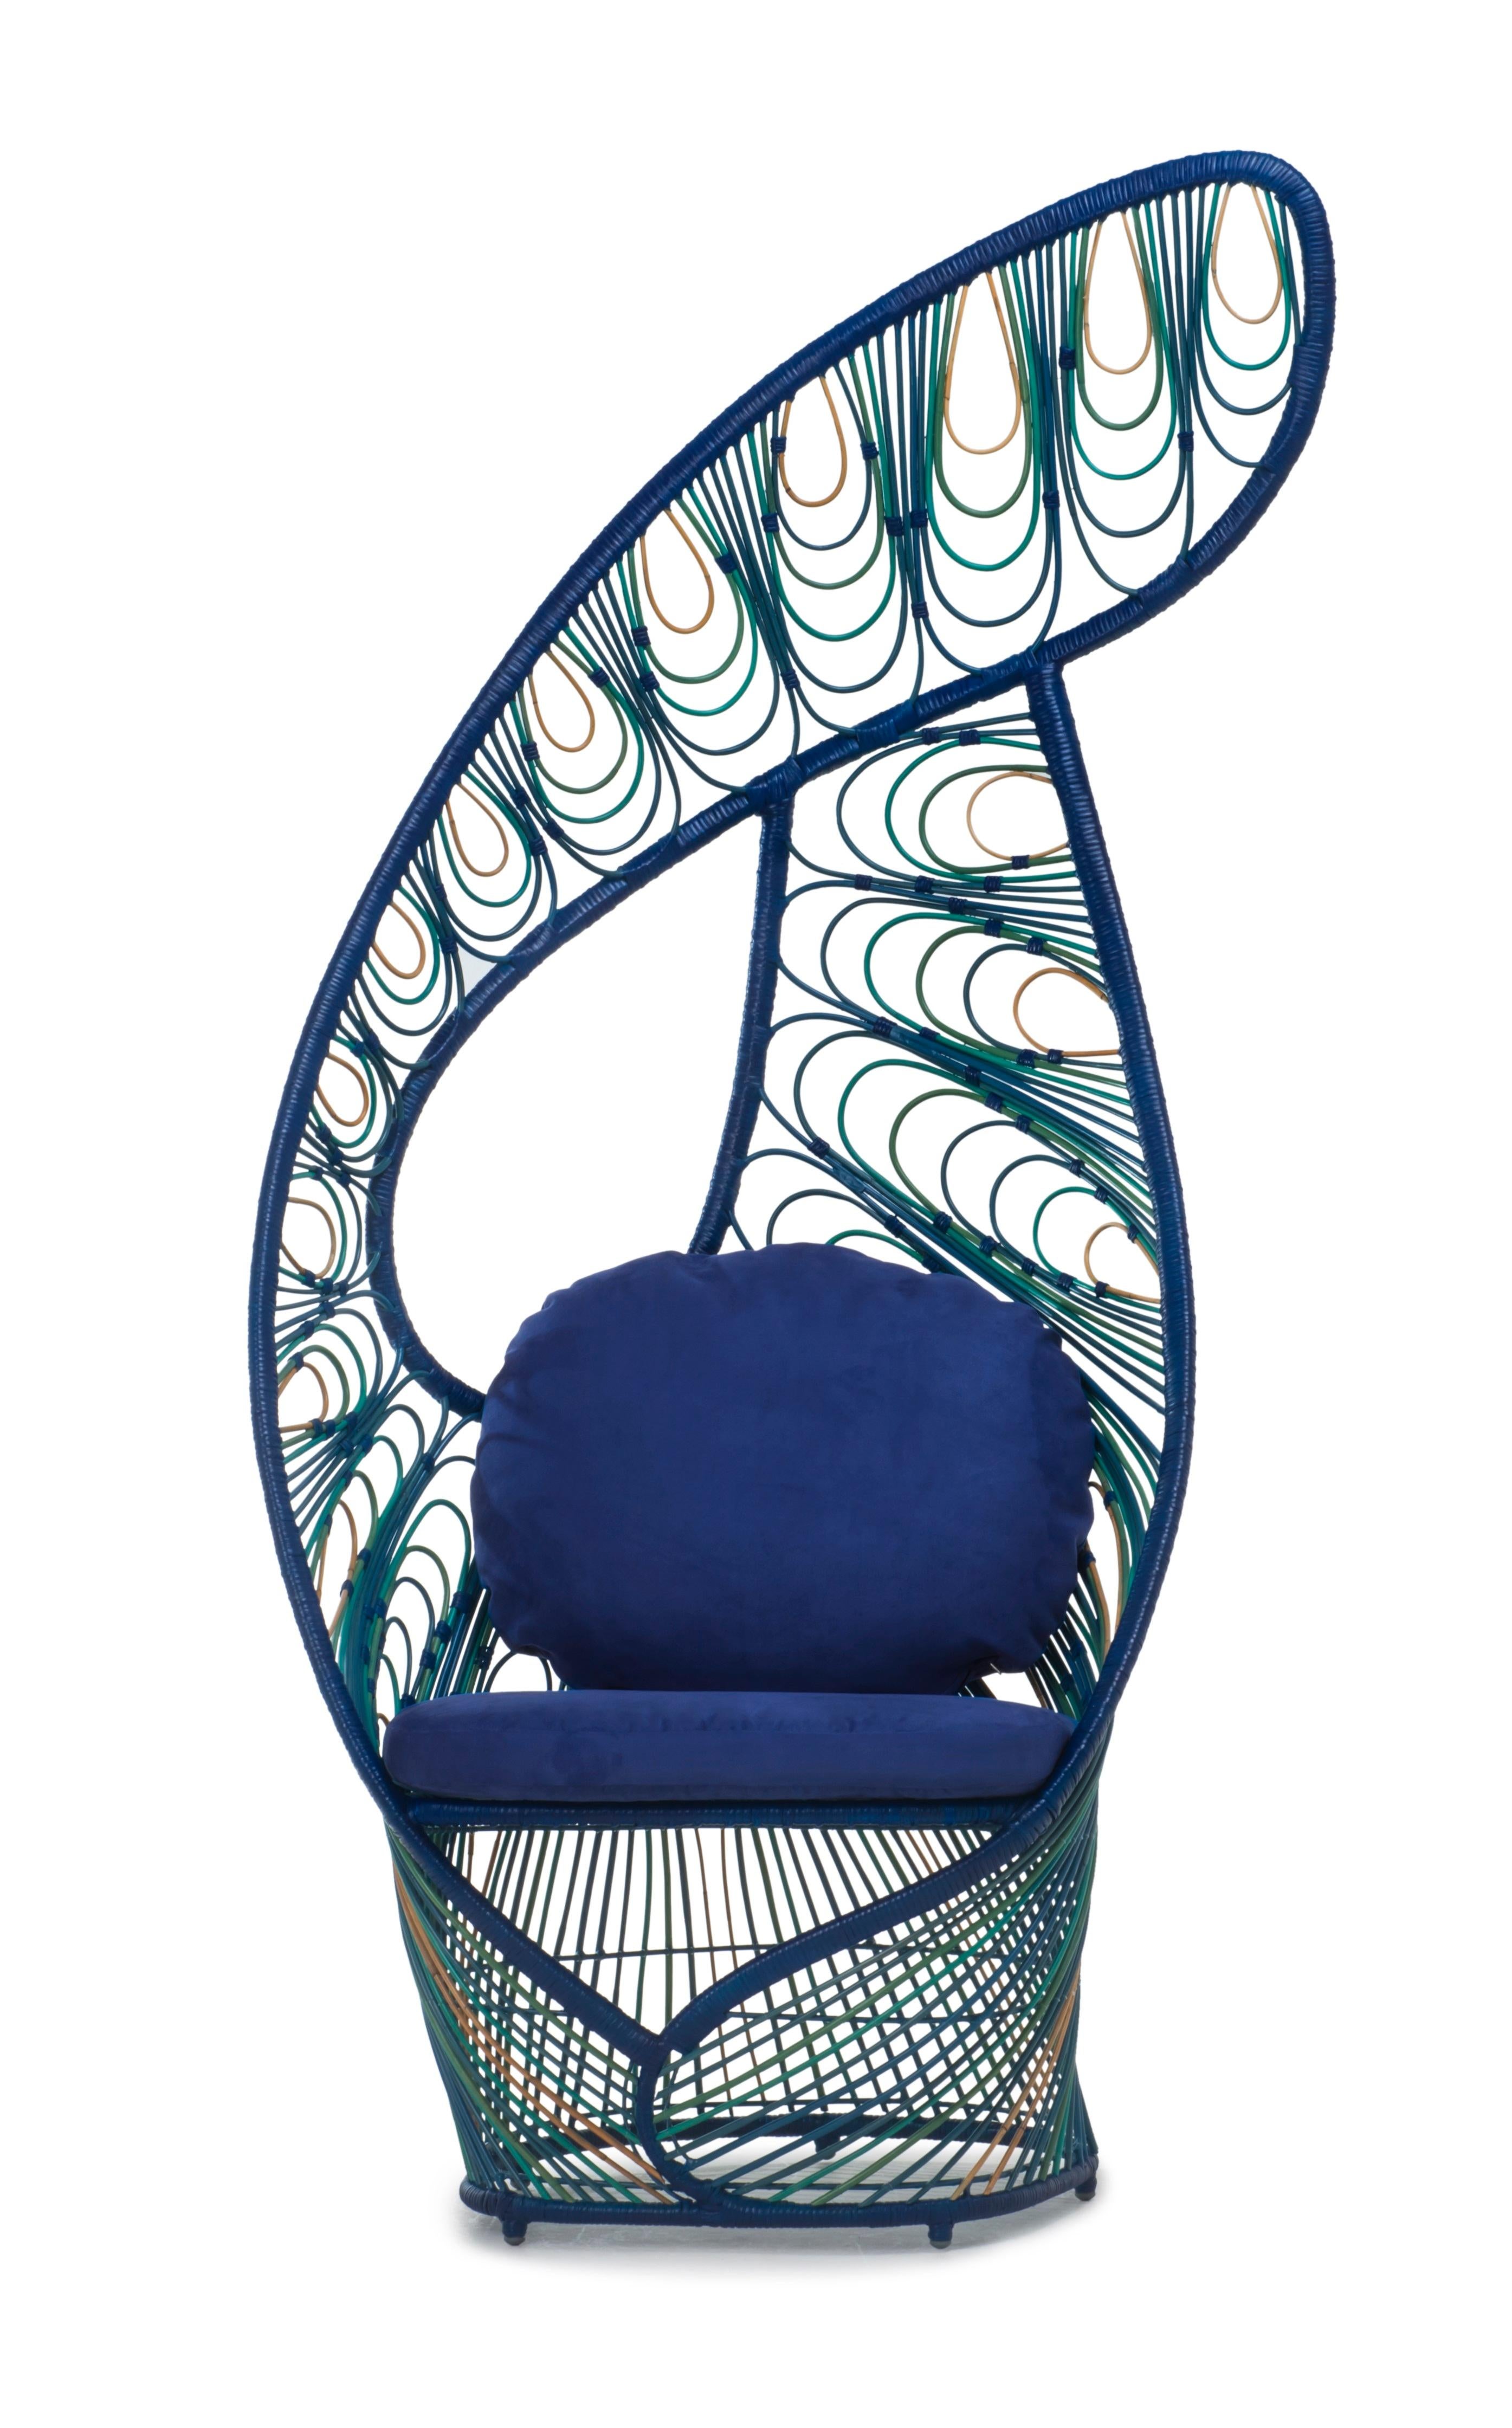 Peacock Easy Sessel von Kenneth Cobonpue.
MATERIALIEN: Rattan
Auch in anderen Farben erhältlich.
Abmessungen: 68,5 cm x 90 cm x H 198 cm 

Peacock ist eine moderne Interpretation des gleichnamigen traditionellen Korbstuhls. Wie der königliche Vogel